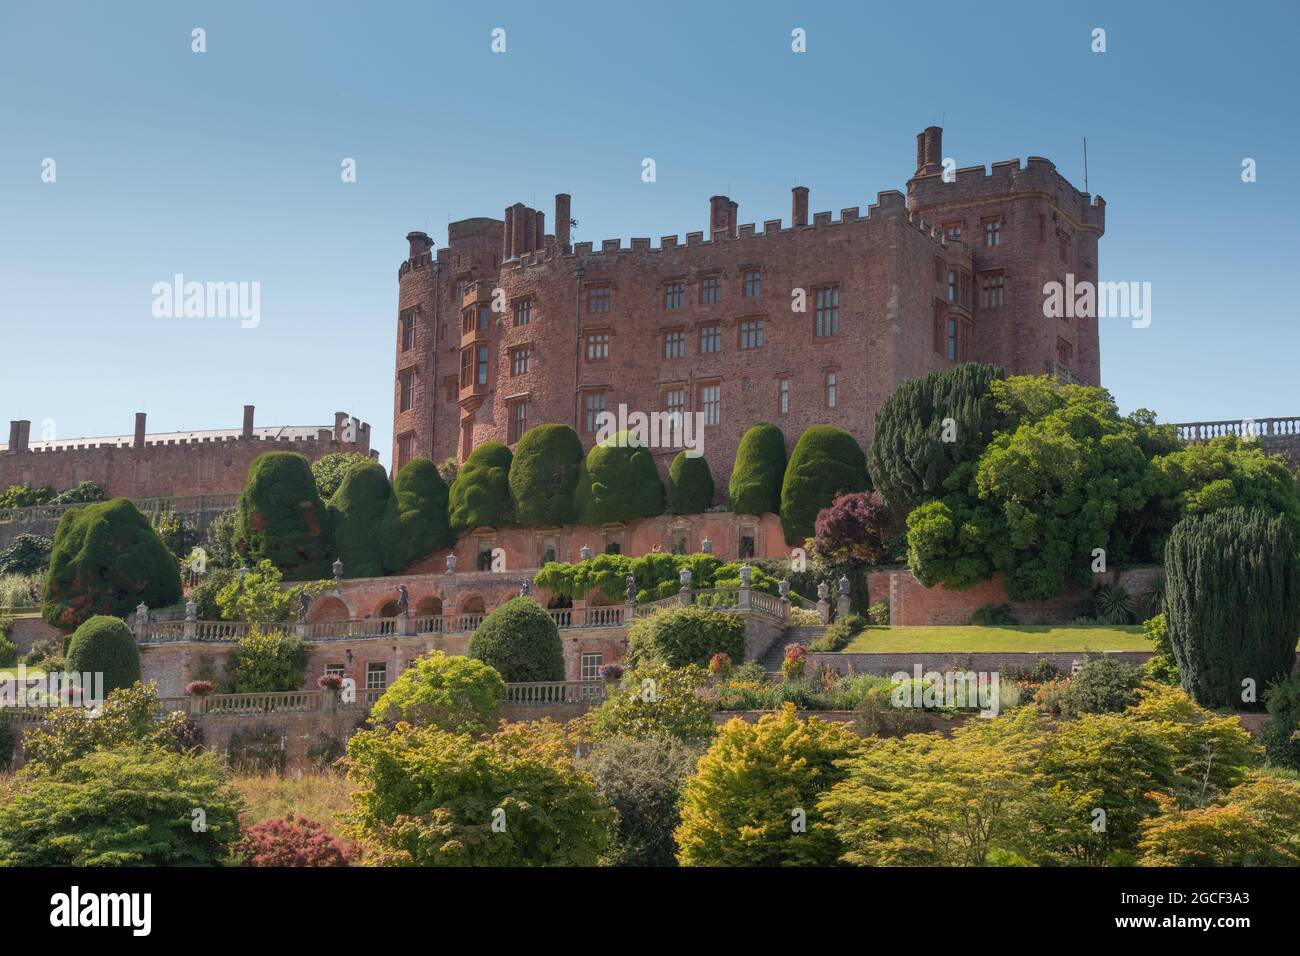 Blick auf das Schloss und die Gärten von Powis Castle, Wales - ein Ntional Trust-Hotel. Stockfoto